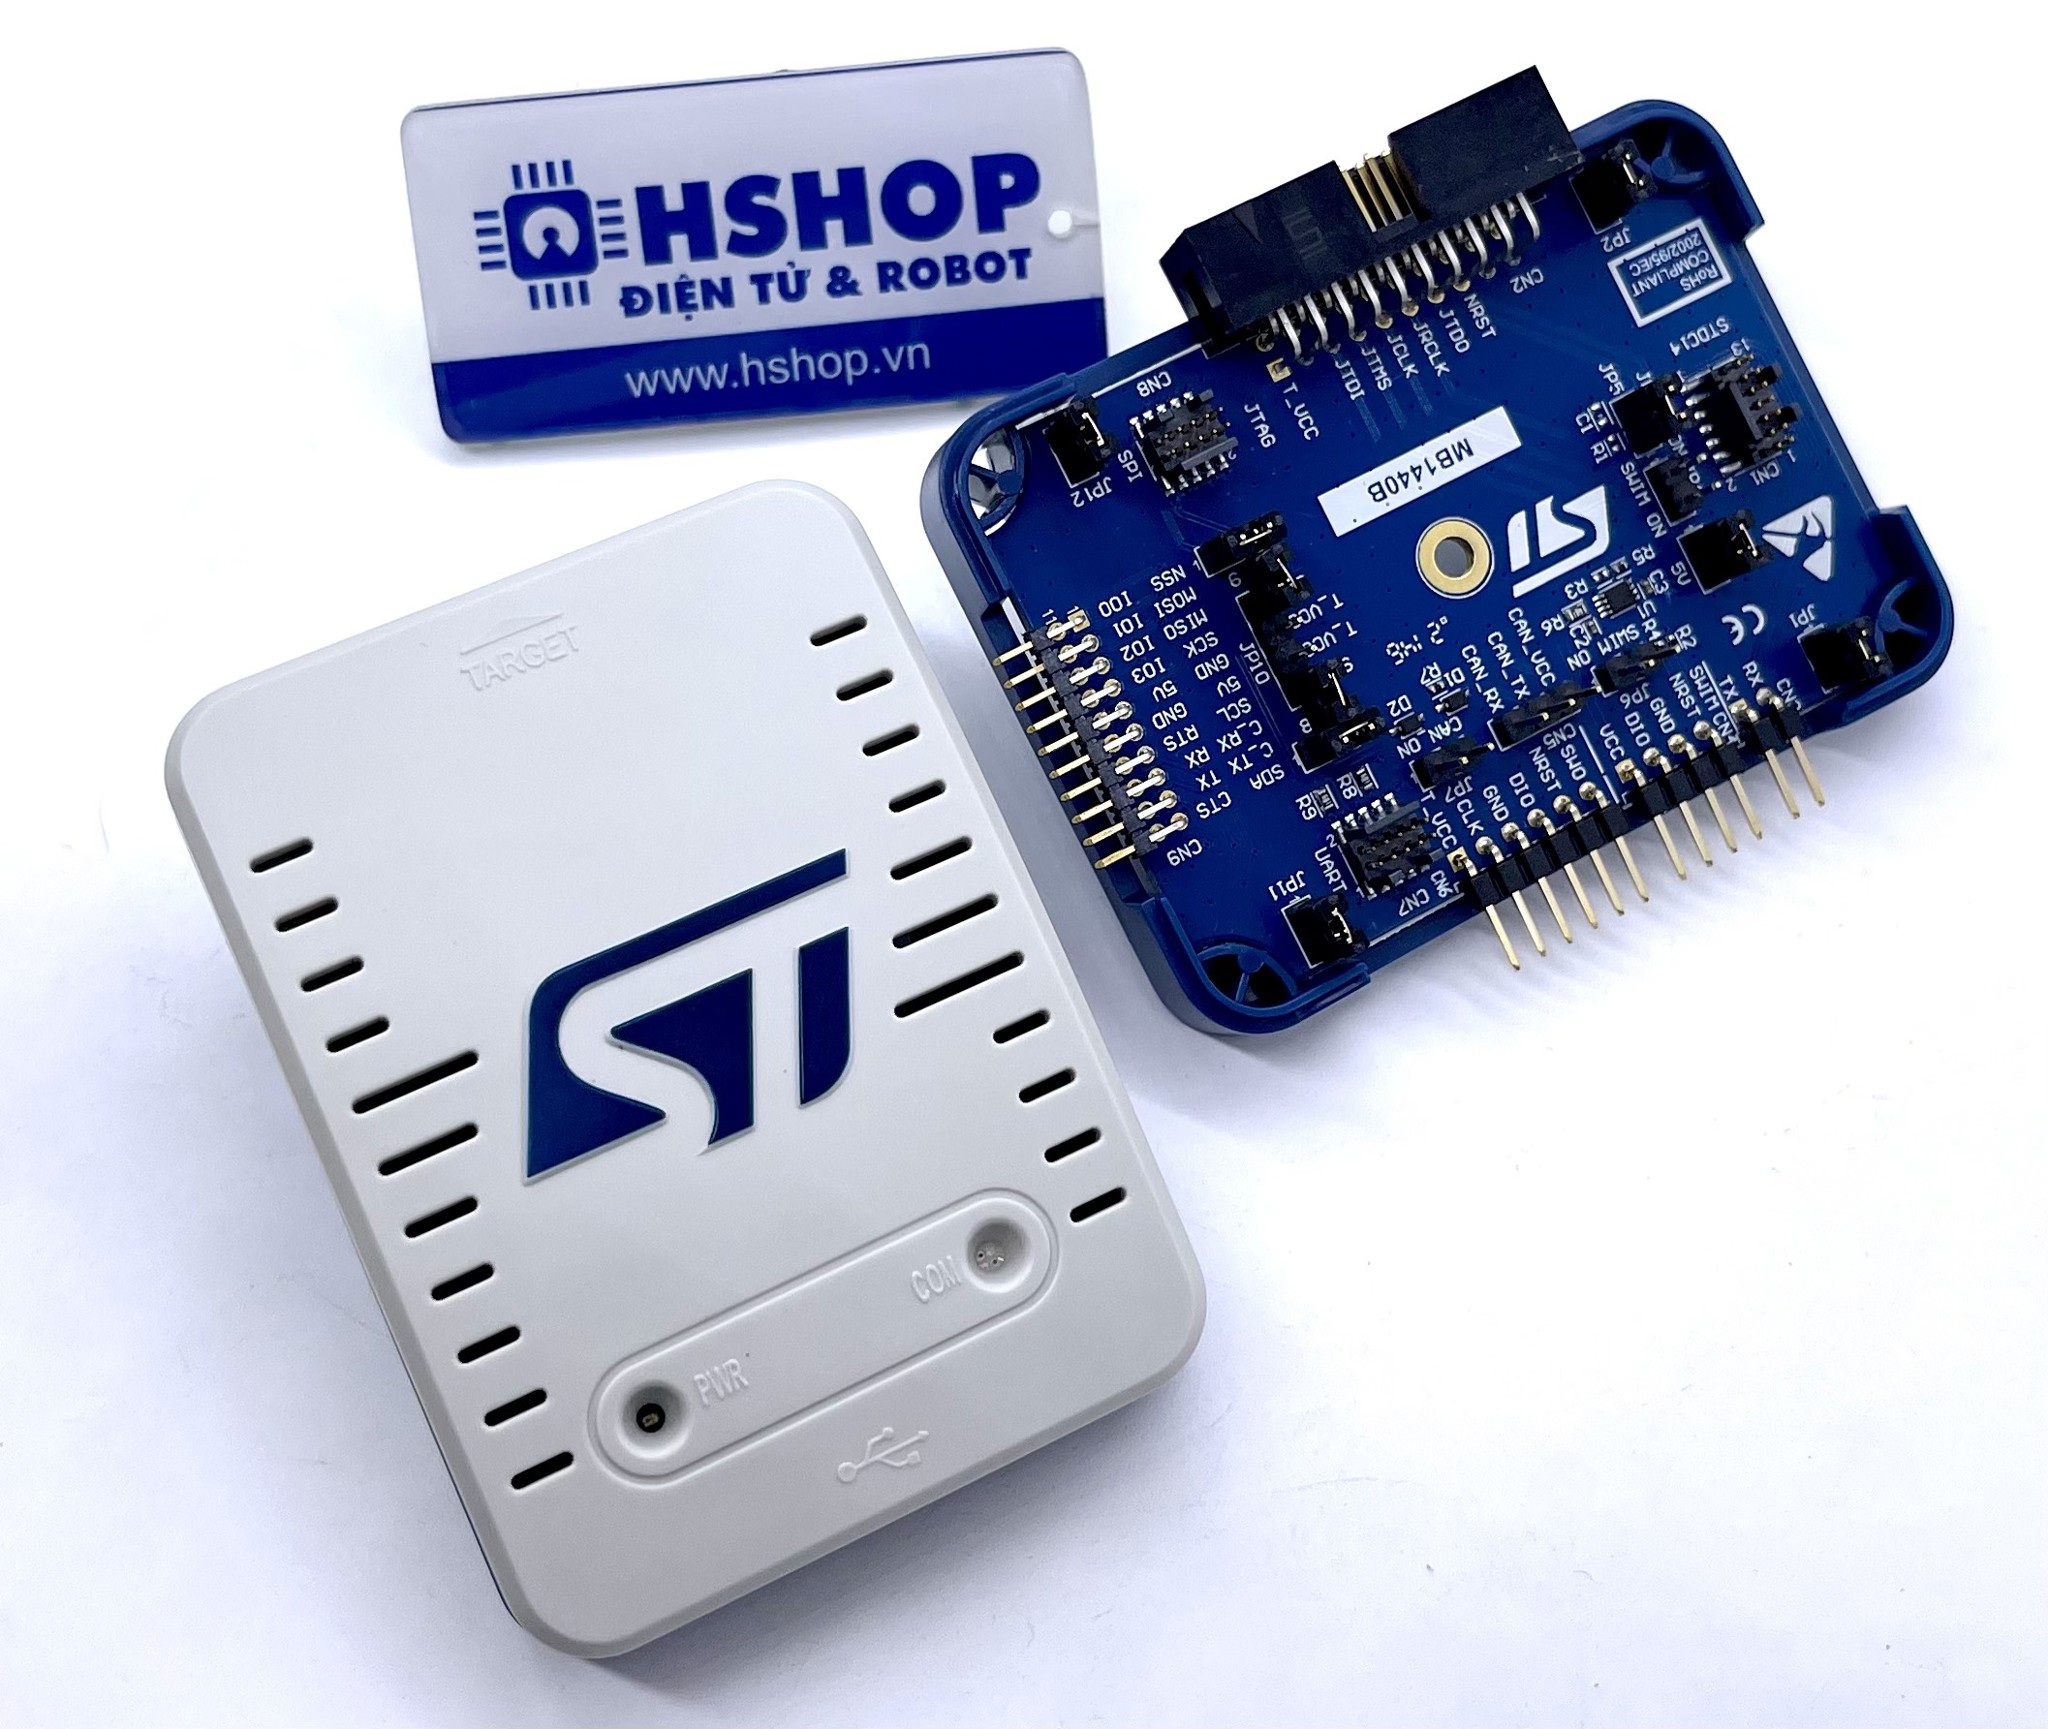 Mạch nạp STLINK-V3 SET STLINK-V3 modular in-circuit debugger and programmer for STM32/STM8 chính hãng